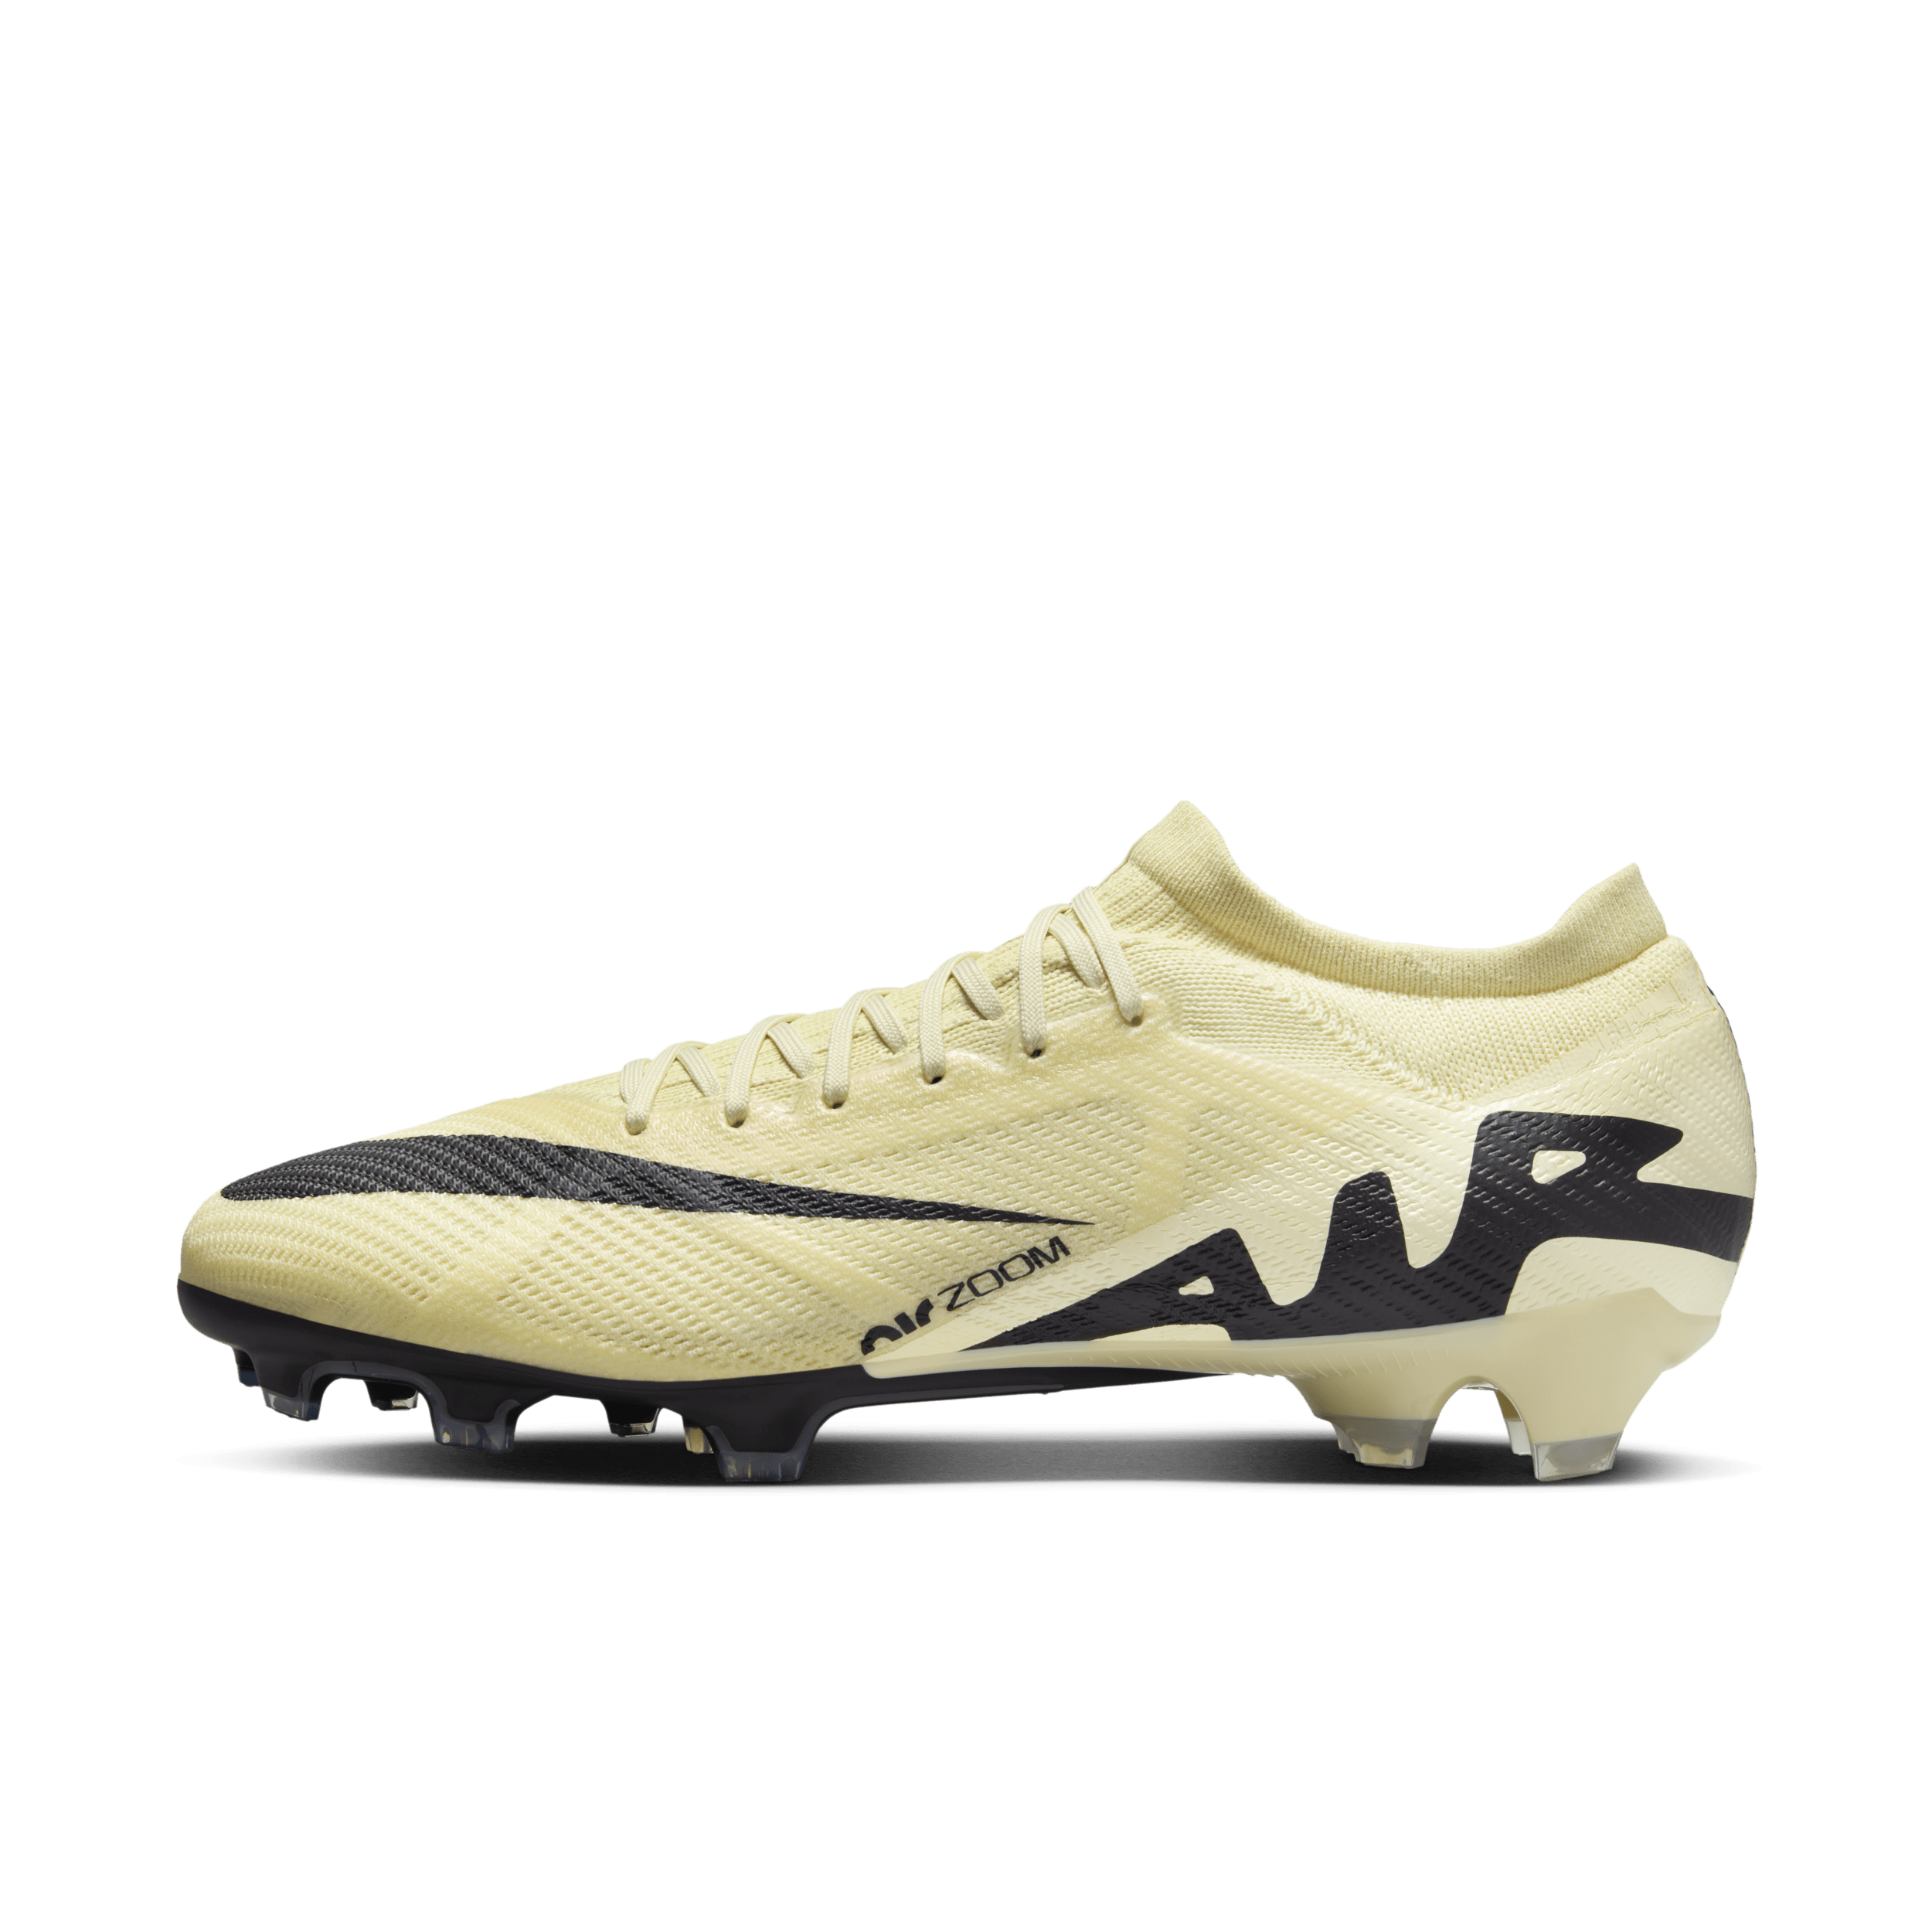 Nike Mercurial Vapor 15 Pro low top voetbalschoenen (stevige ondergrond) - Geel